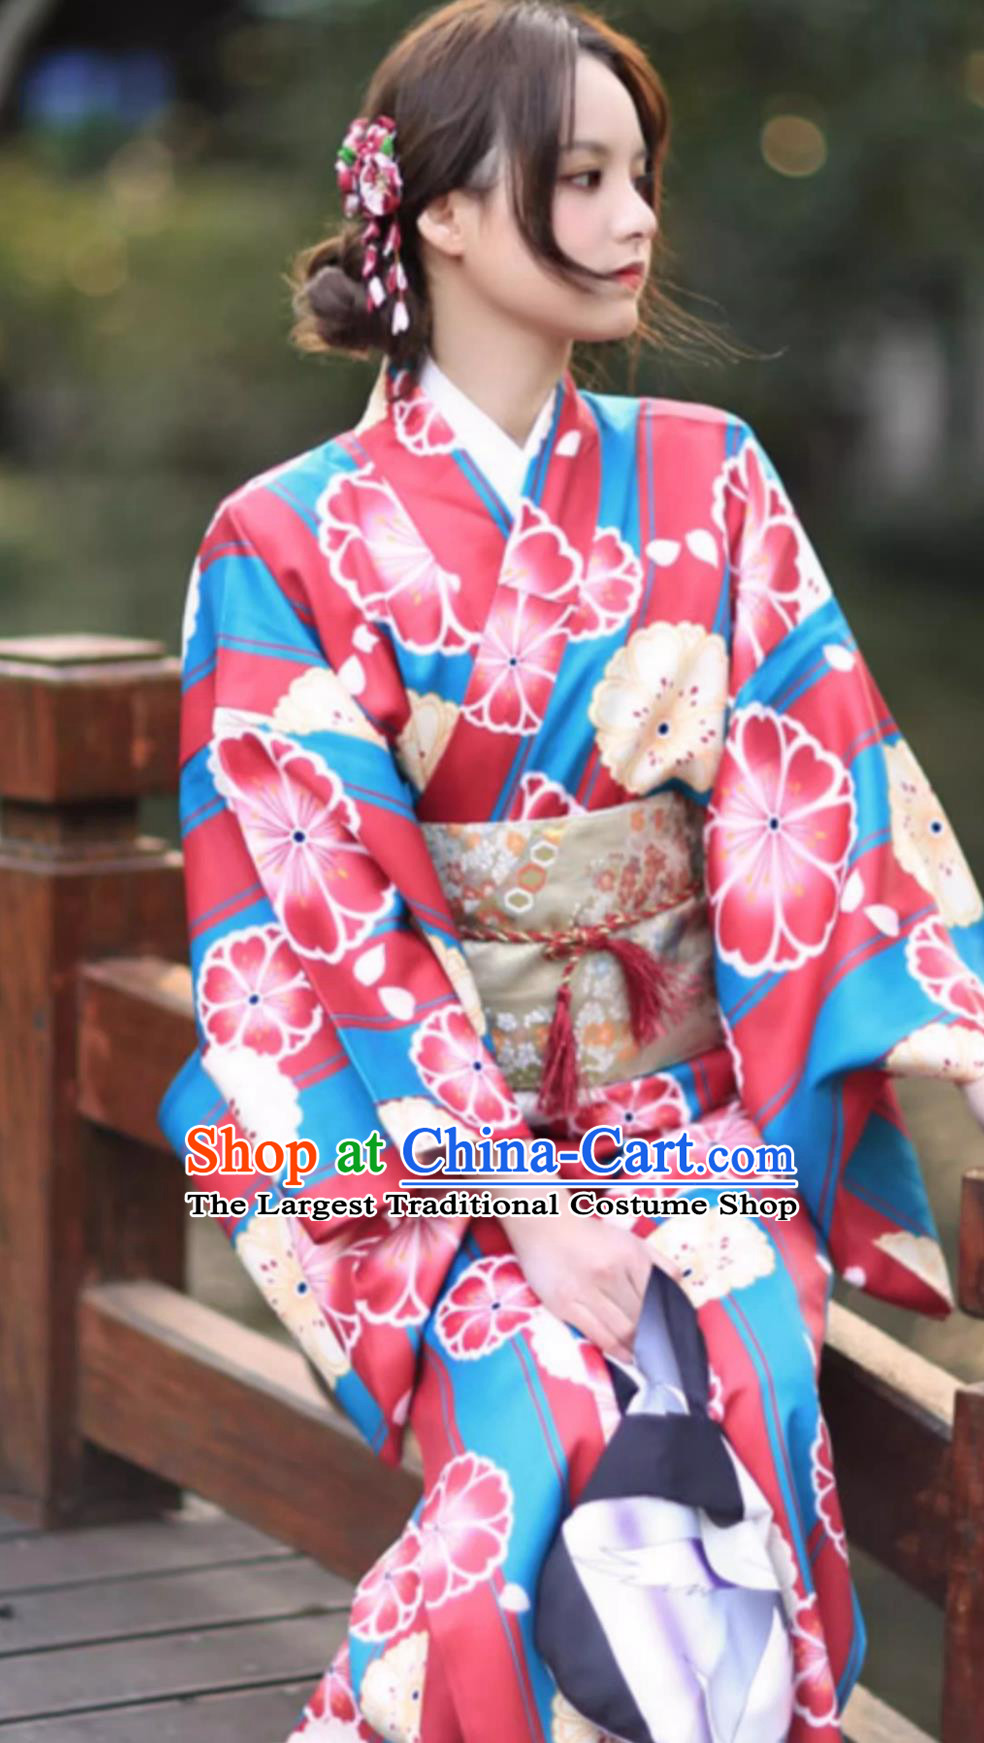 Kimono Women Formal Attire Japanese Style Improved Kimono Bathrobe For Girls